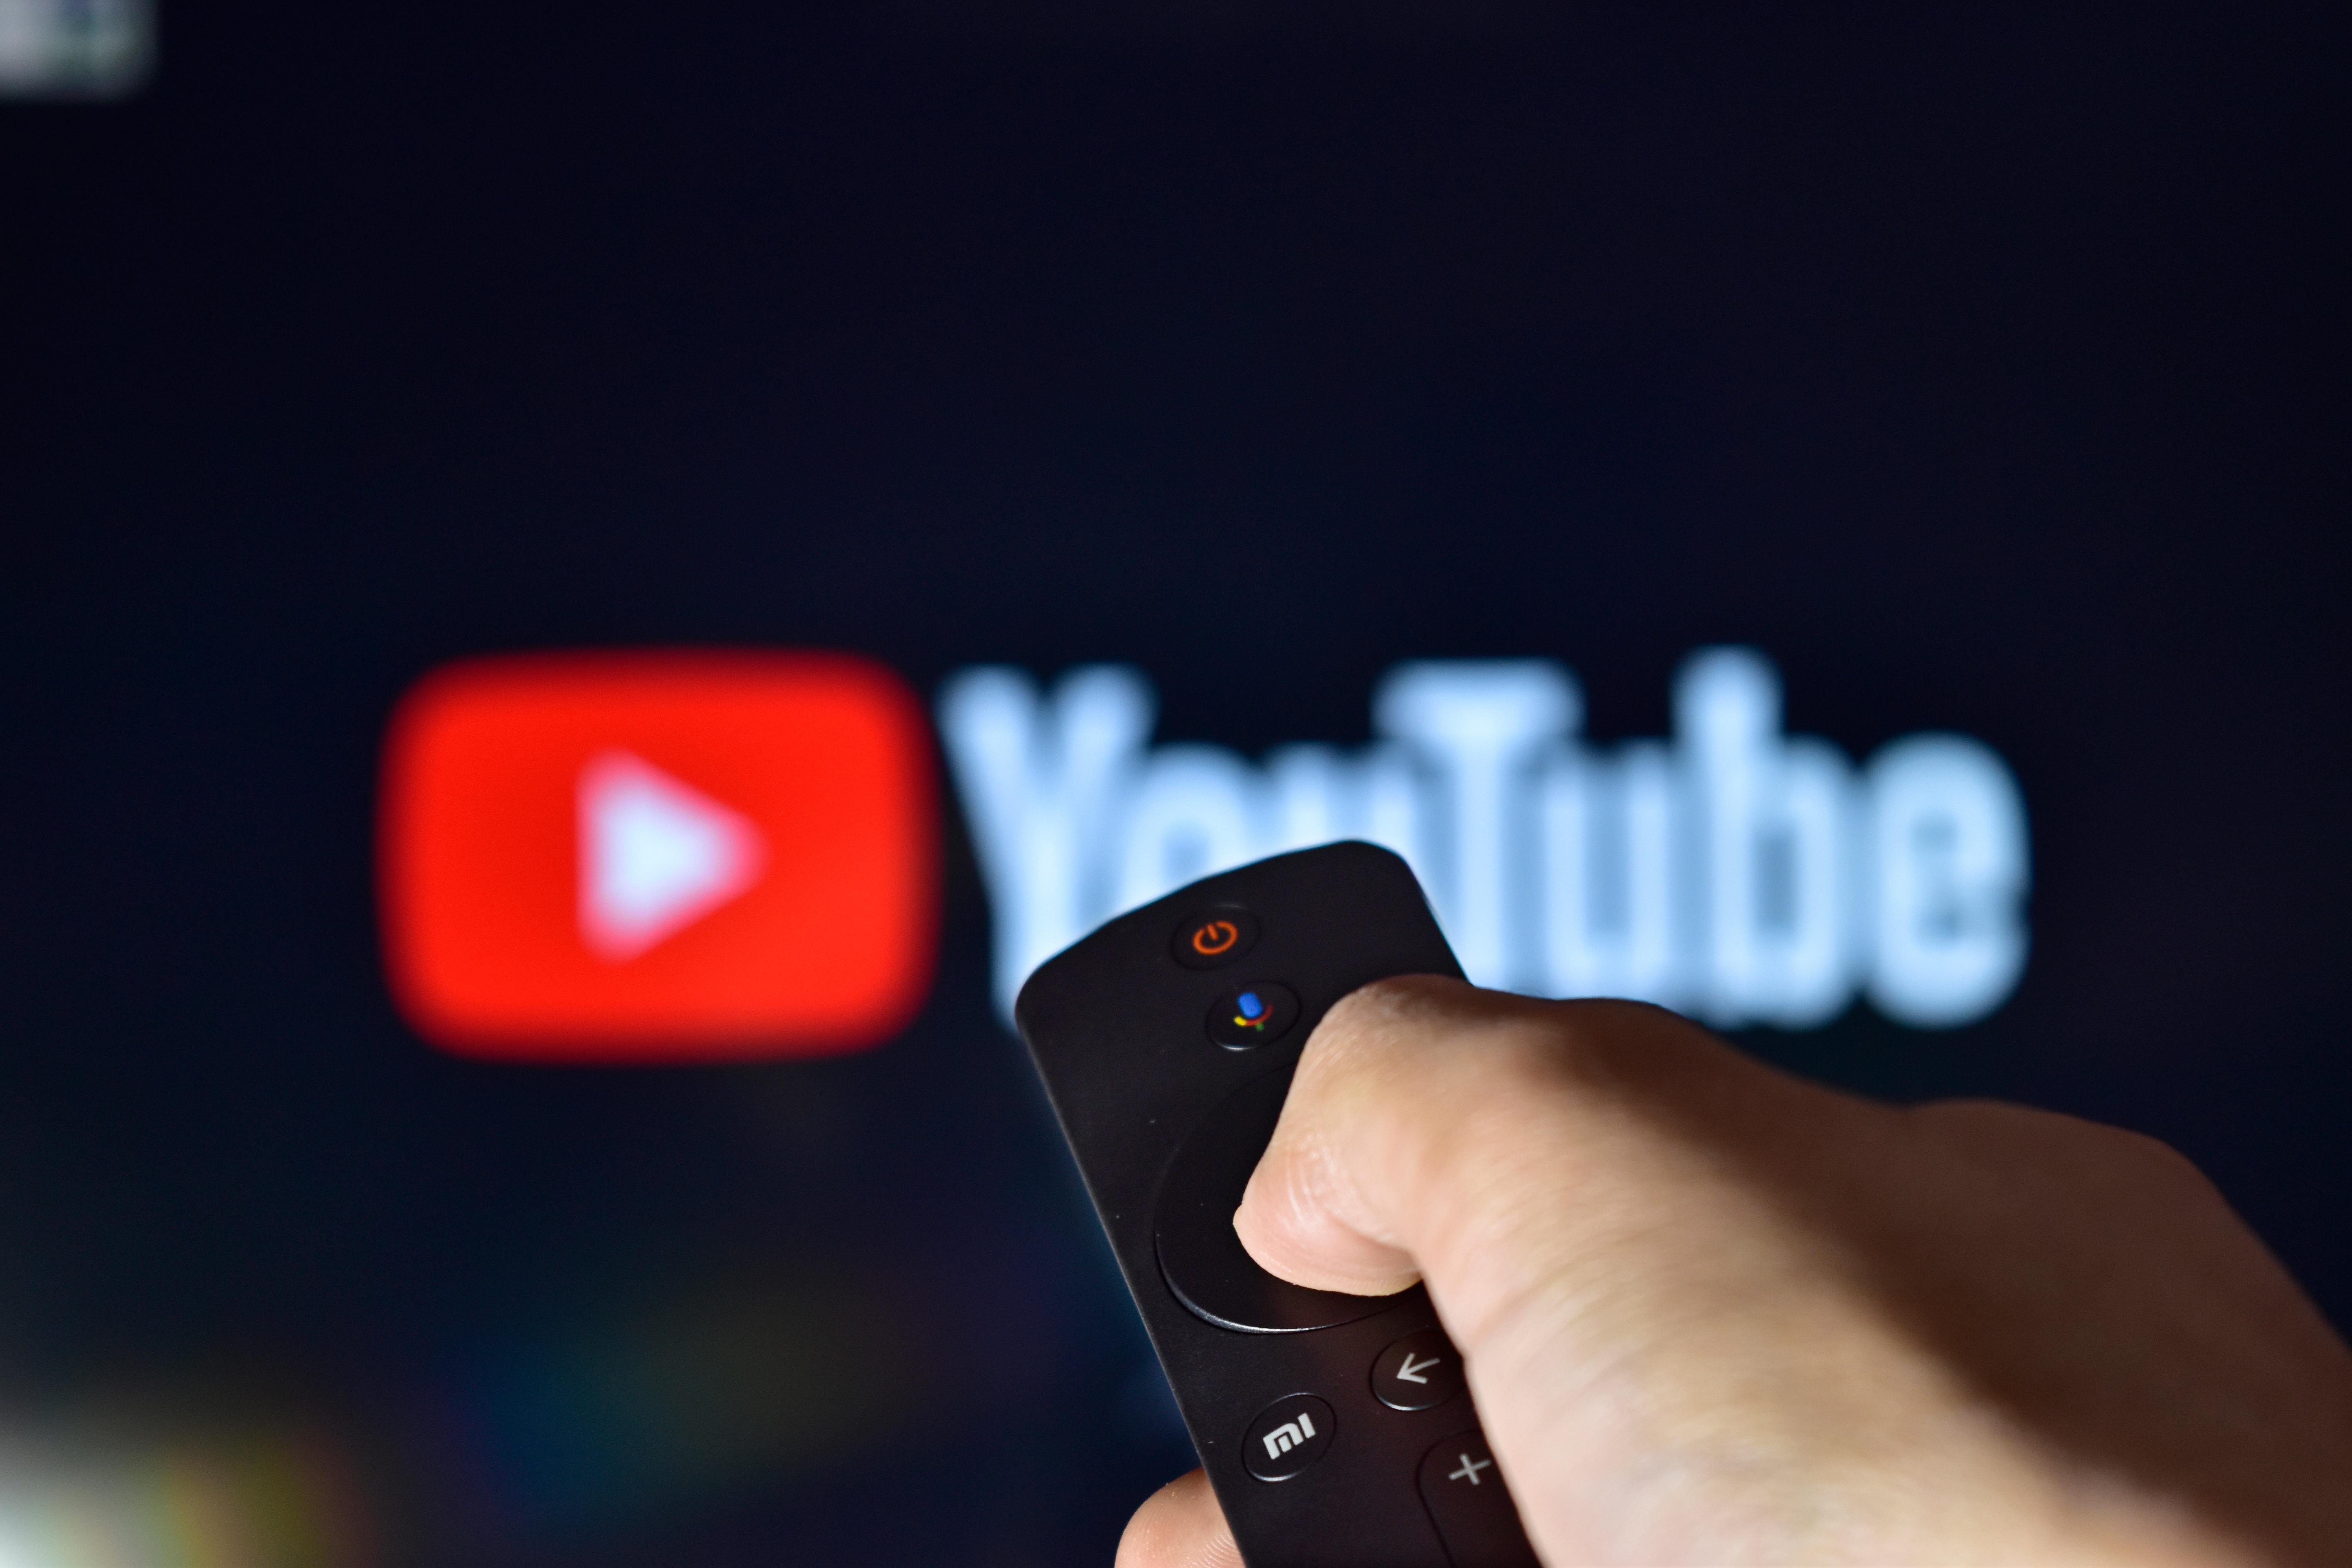 YouTube veut transformer son application TV en plateforme de téléachat